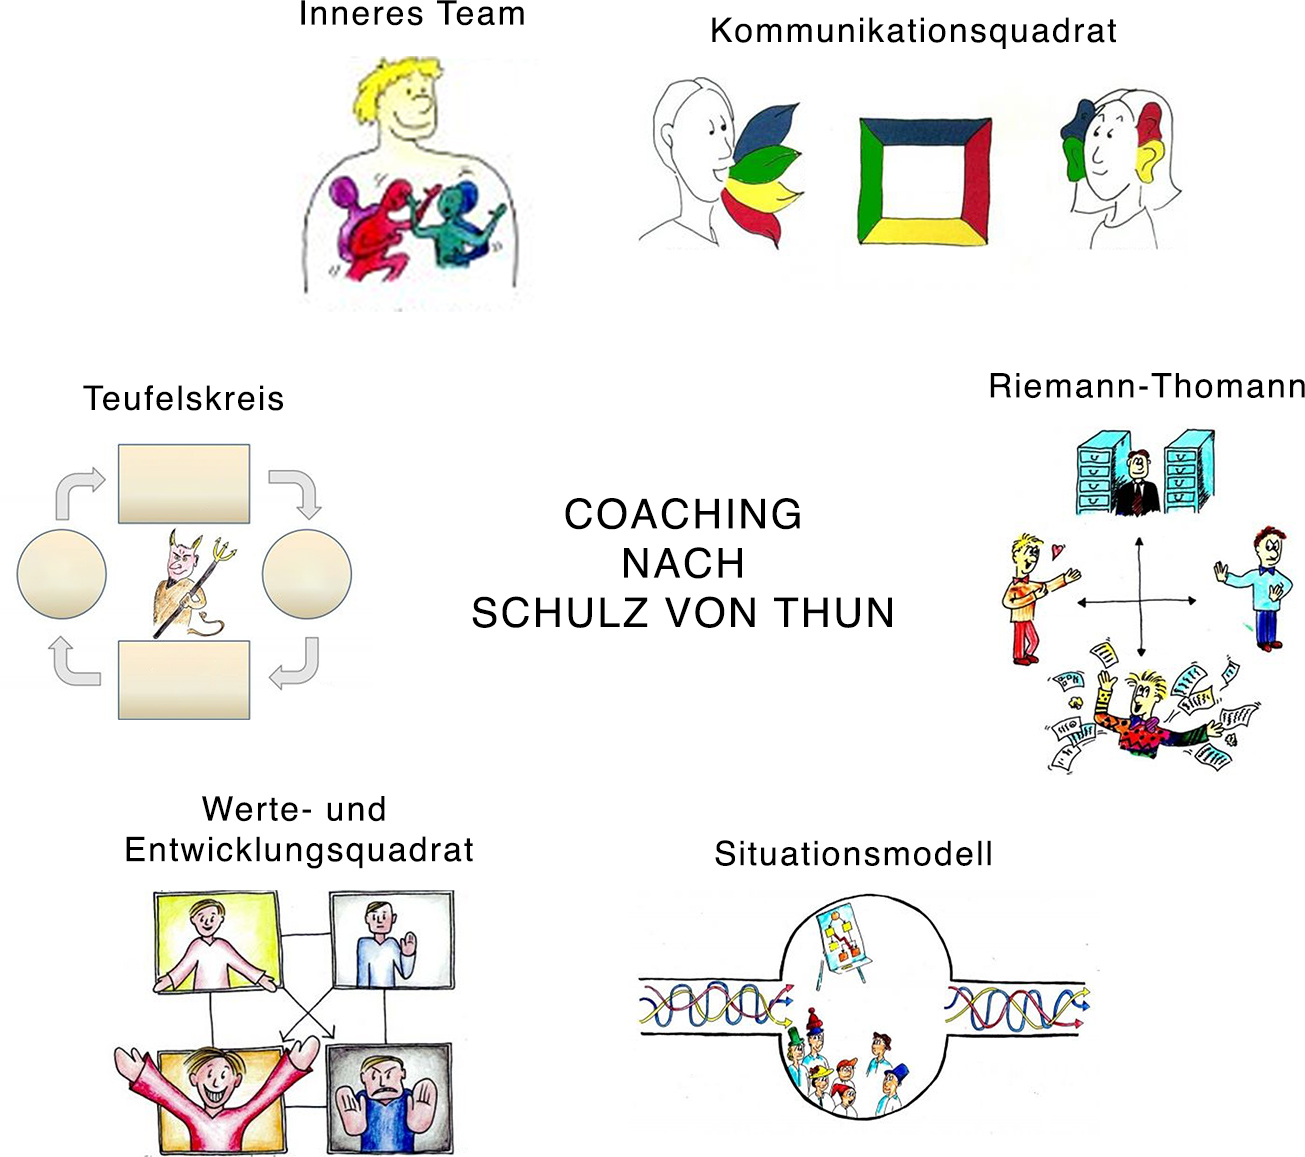 Coaching nach Schulz von Thun